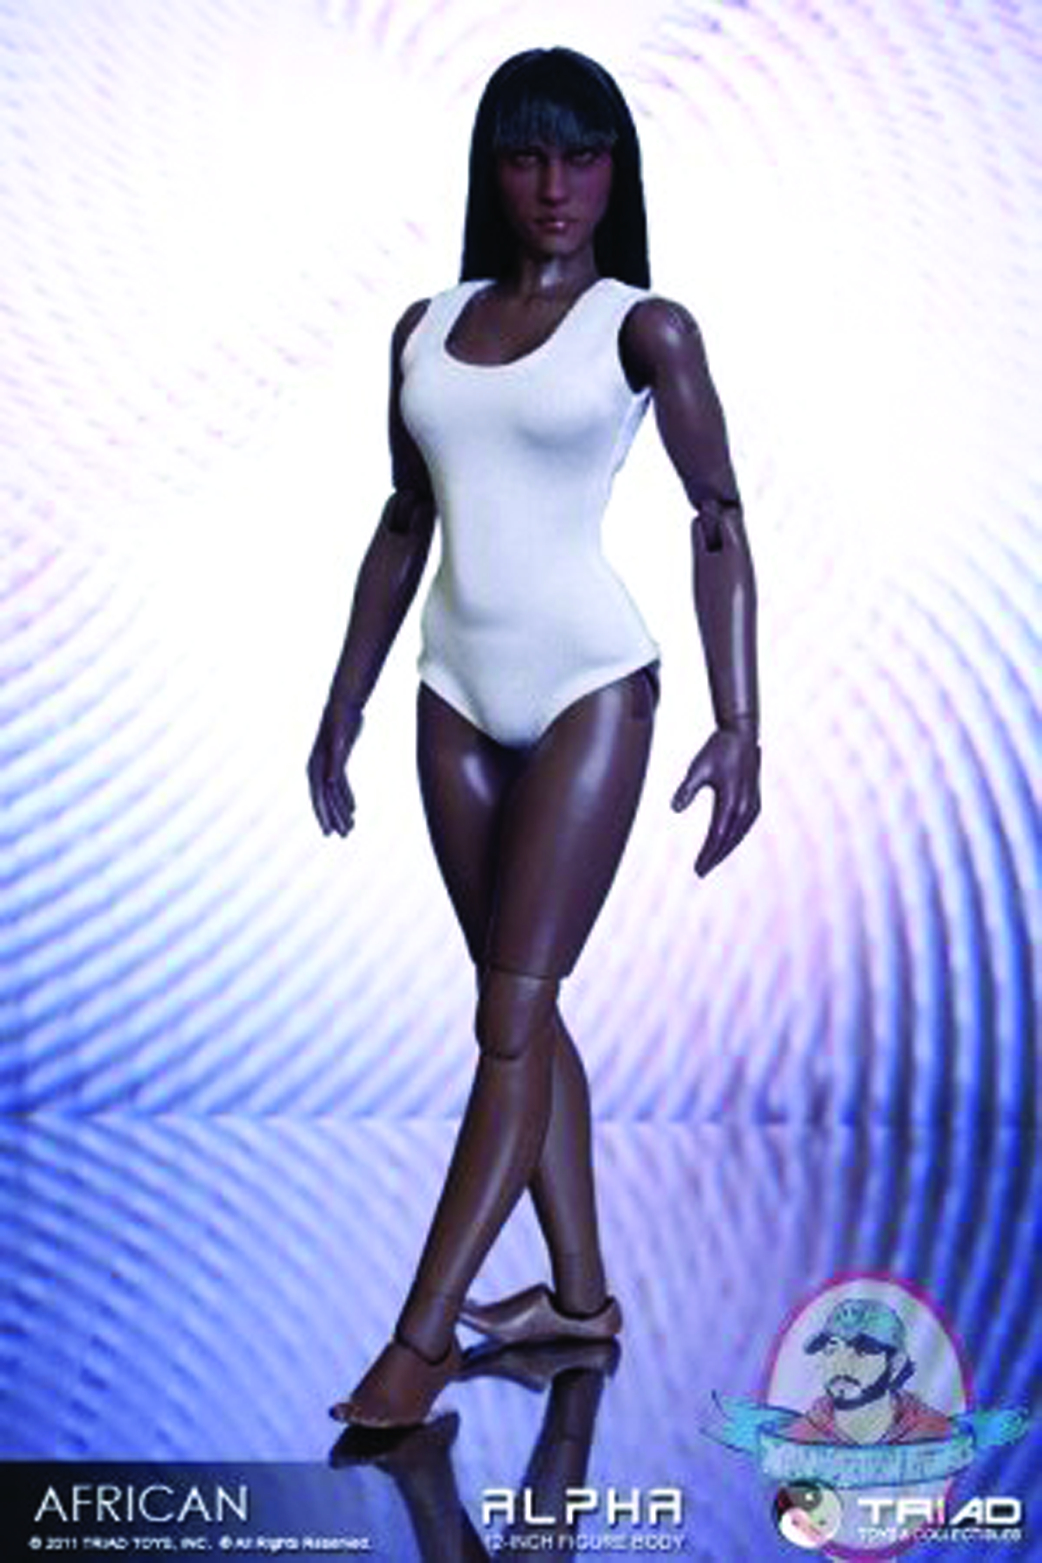 NOV111508 - TRIAD ALPHA AFRICAN AMERICAN FEMALE AF BODY - Previews World